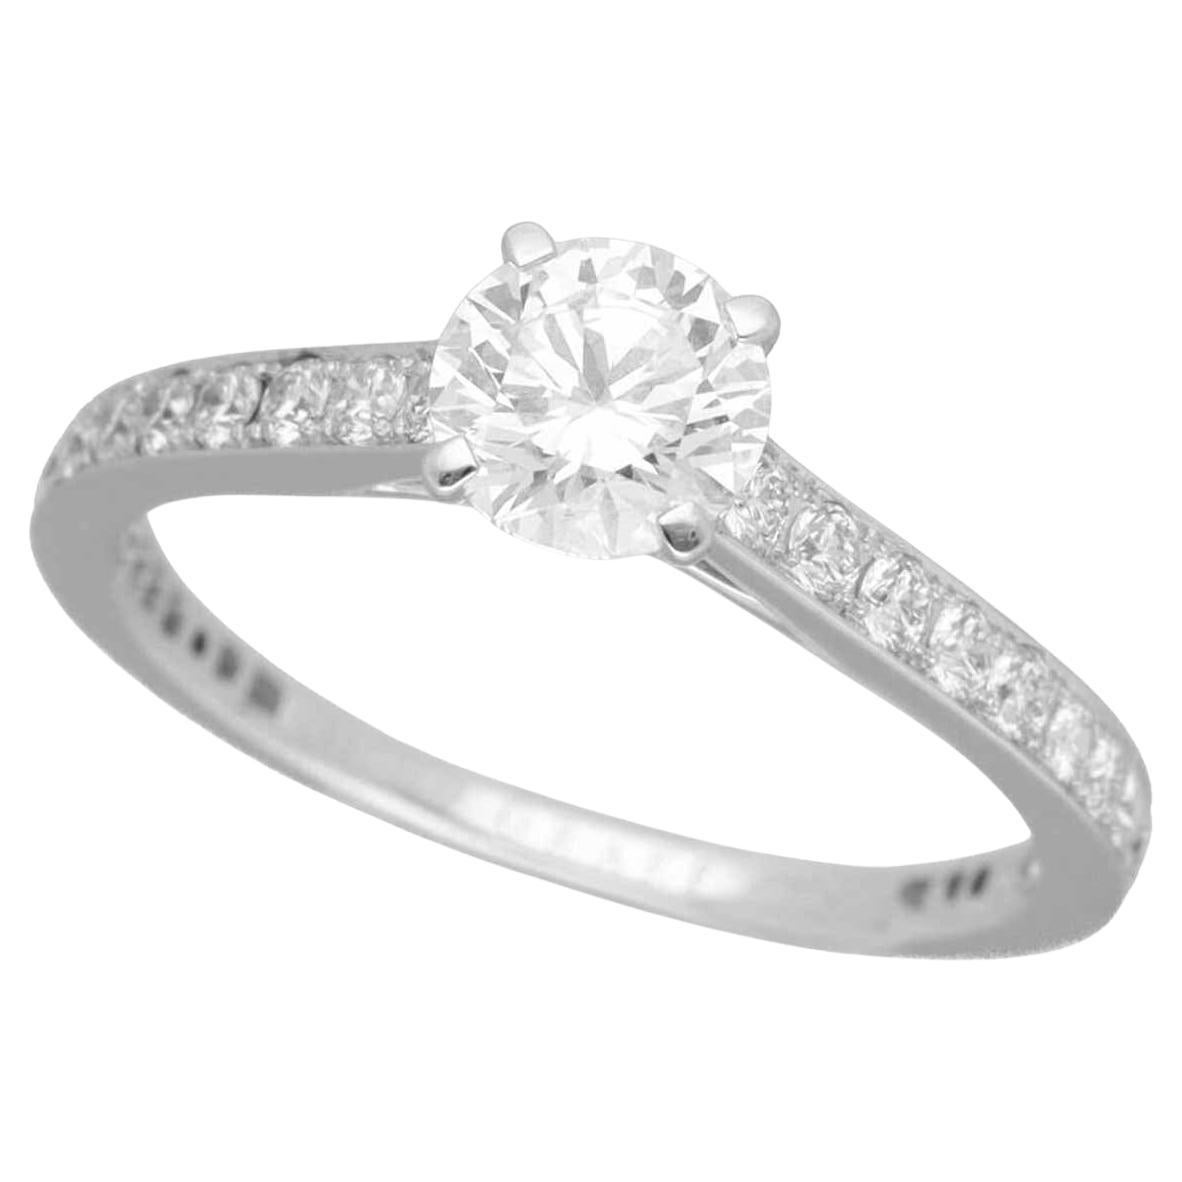 Buy Designer Diamond Bands for Engagement Rings in London, UK